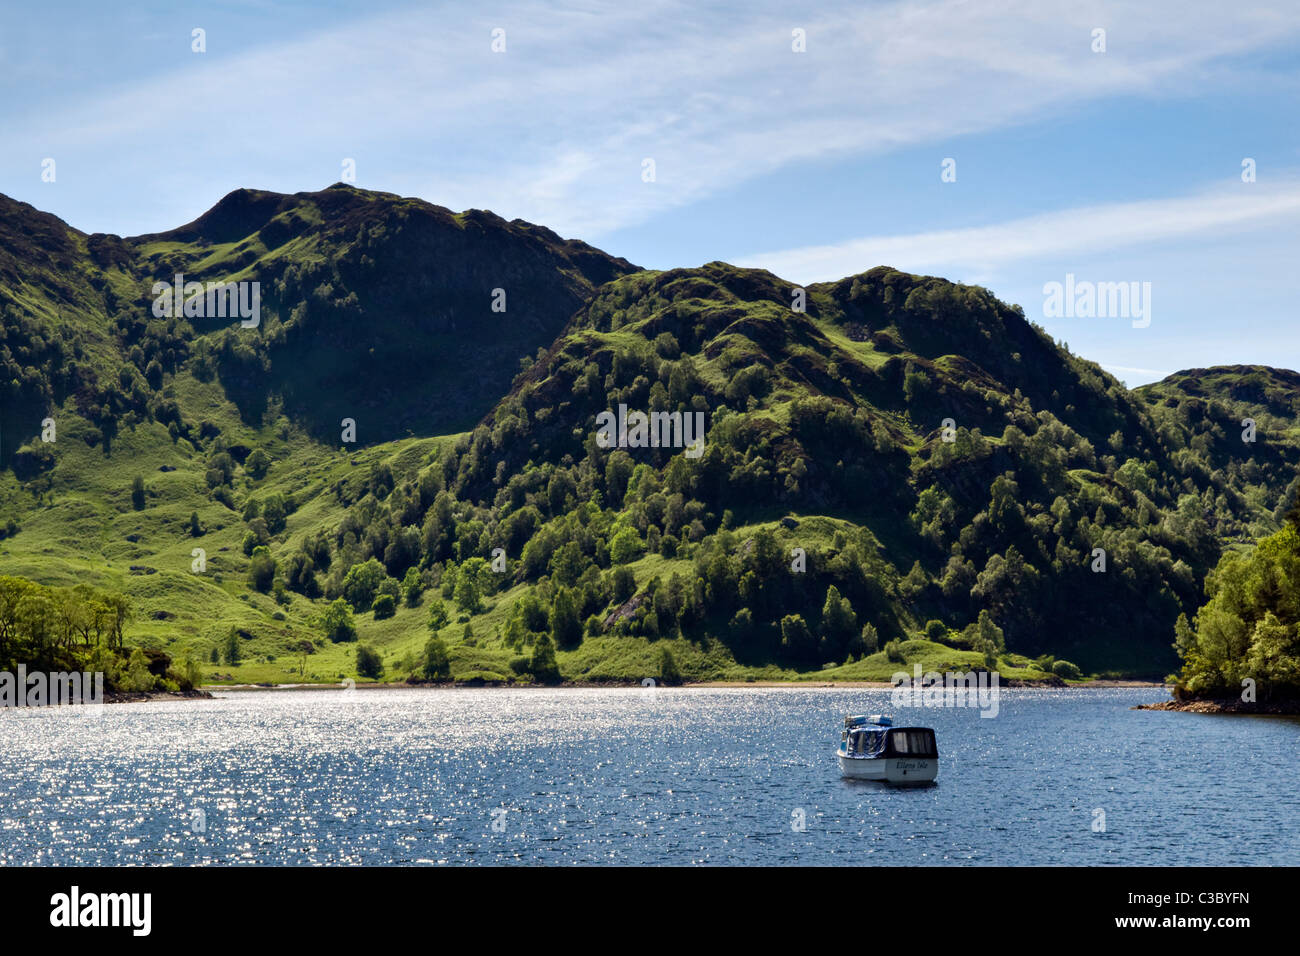 Le magnifique Loch Katrine et montagnes ondulantes partie de la parc national du Loch Lomond et des Trossachs, de Stirling, Ecosse Banque D'Images